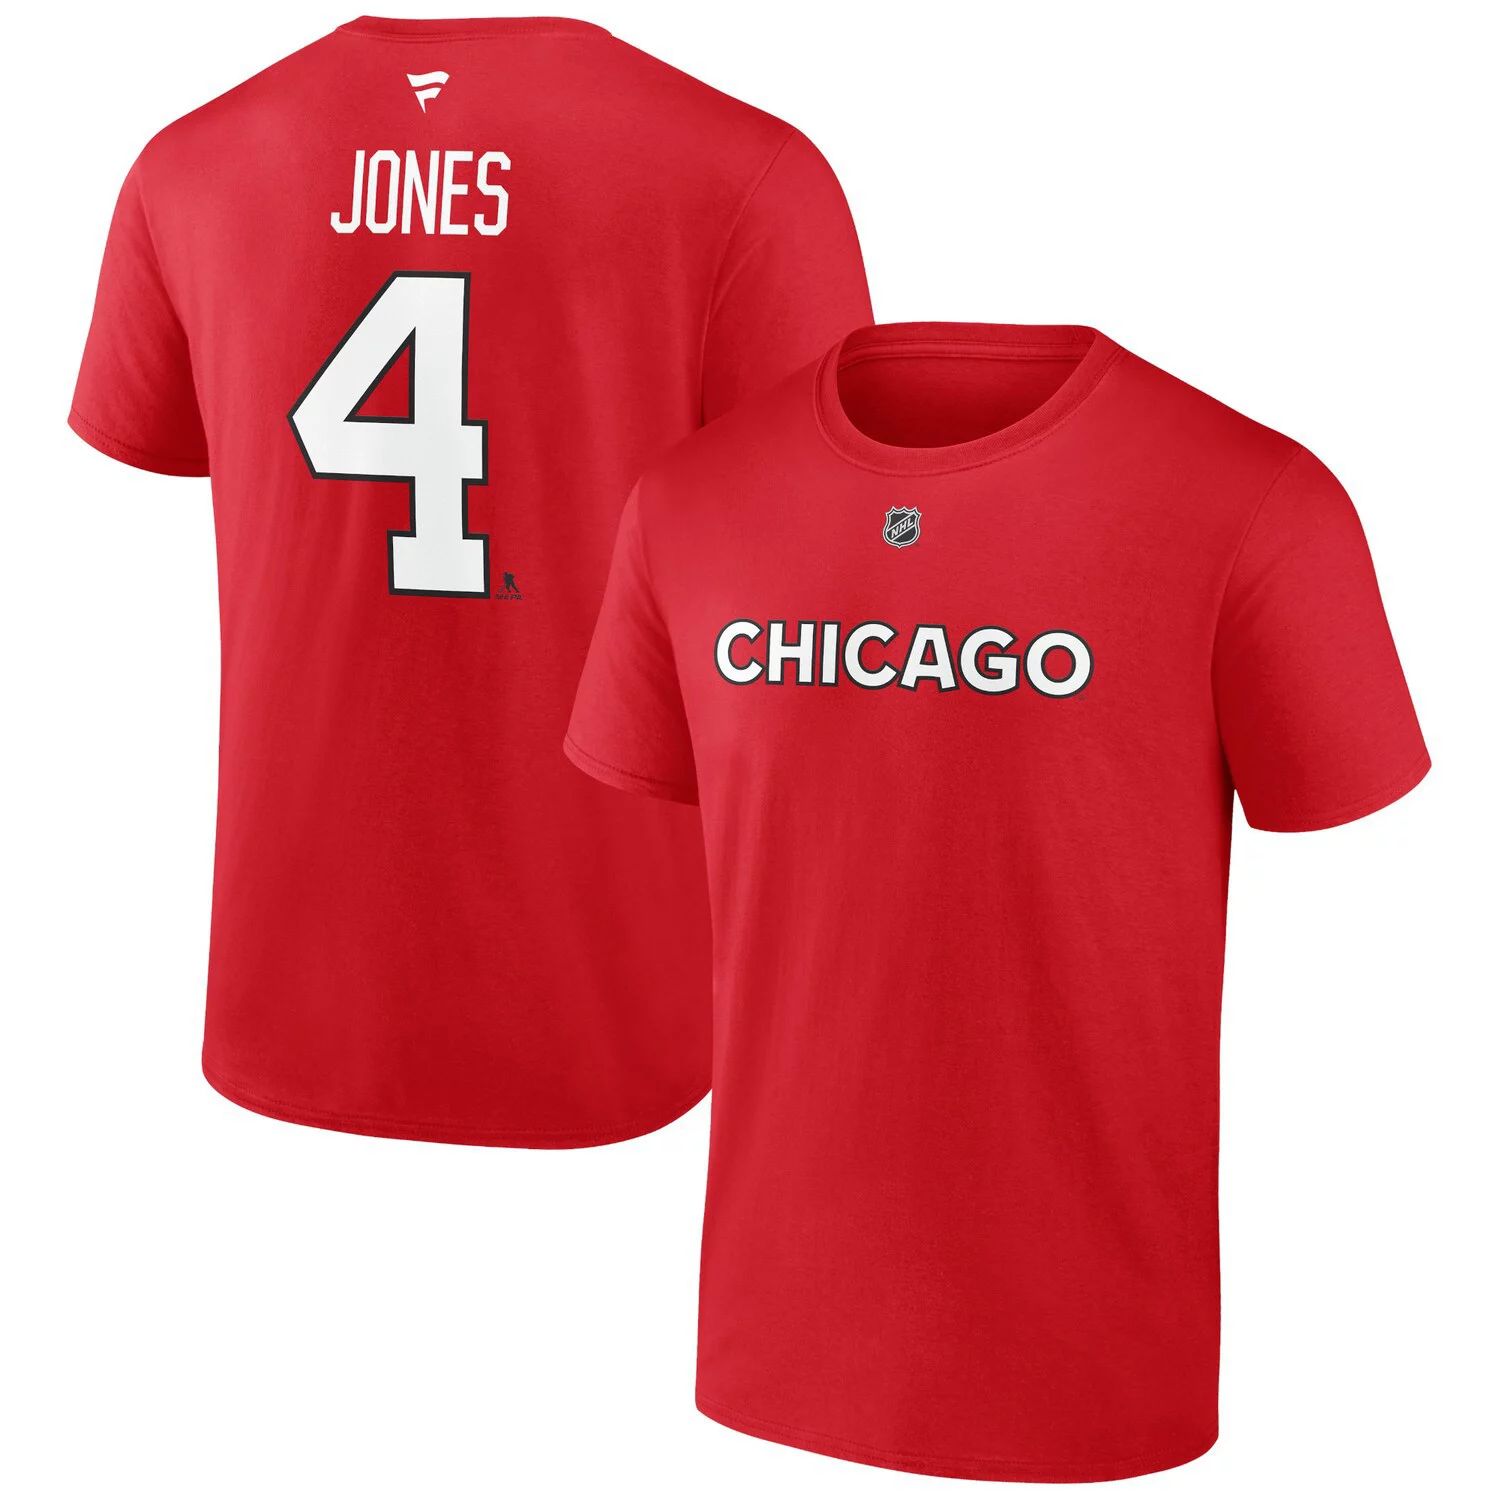 мужская красная мужская футболка с именем и номером команды chicago blackhawks jonathan toews team fanatics Мужская красная мужская футболка с именем и номером Seth Jones Chicago Blackhawks Special Edition 2.0 Fanatics